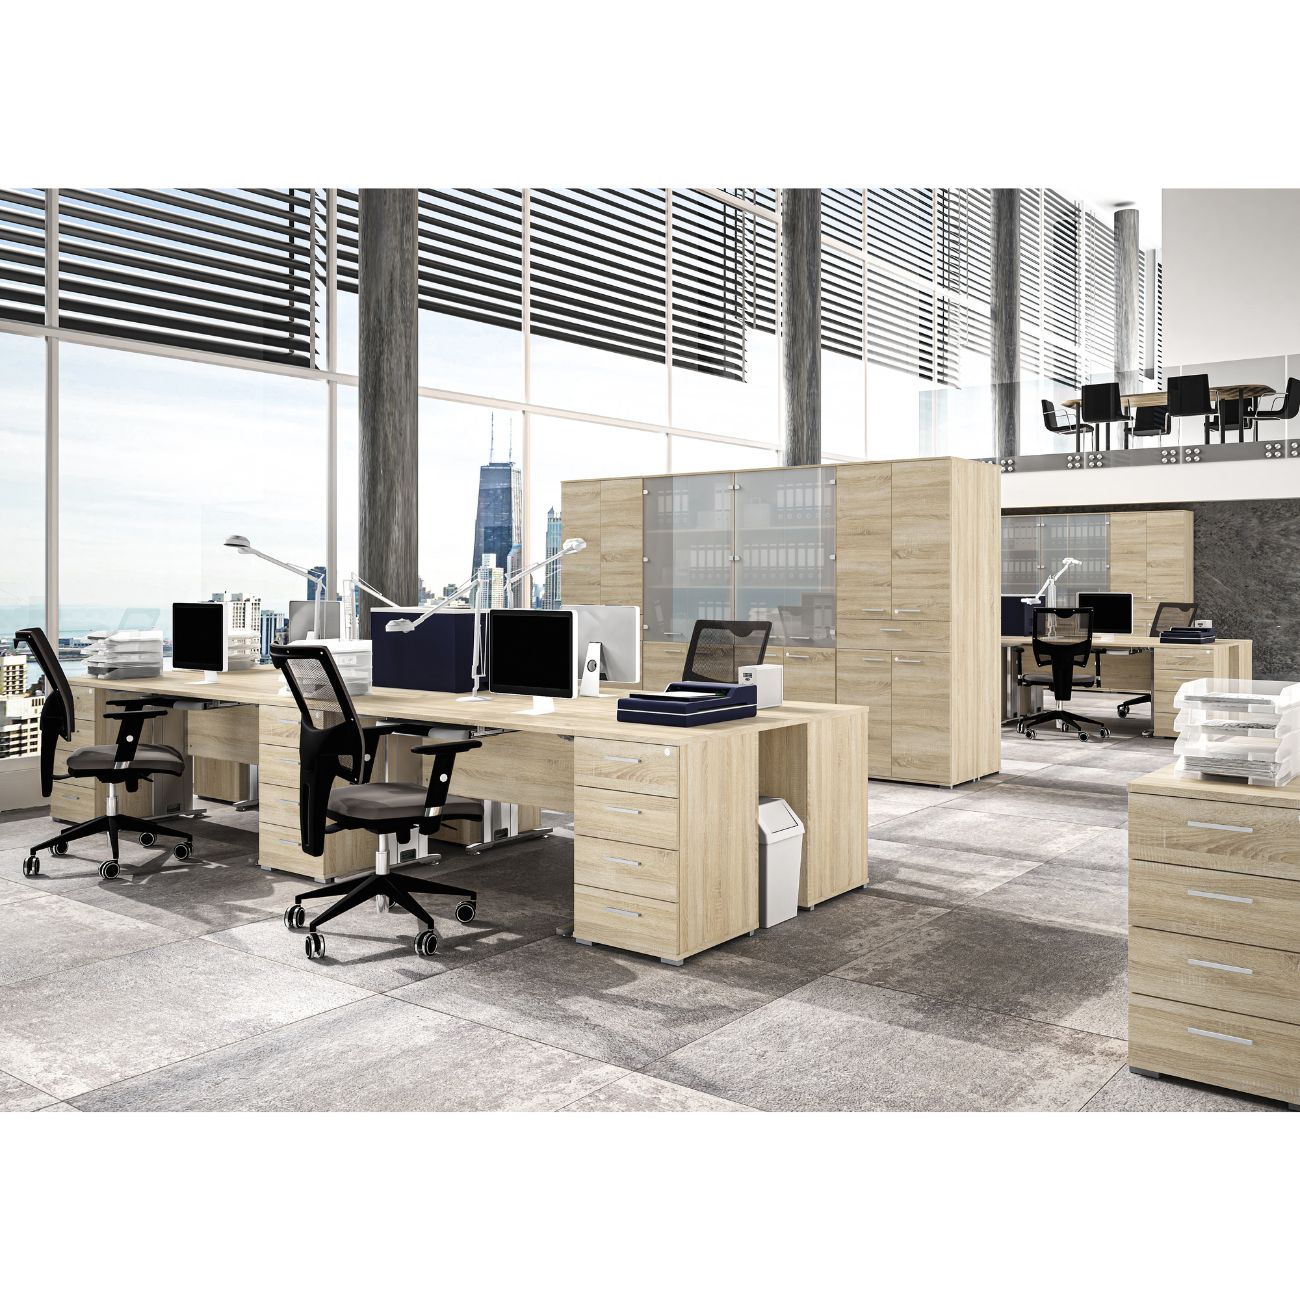 Zdjęcie przedstawiające przykładową aranżację nowoczesnych mebli biurowych office w przestrzeni biurowej